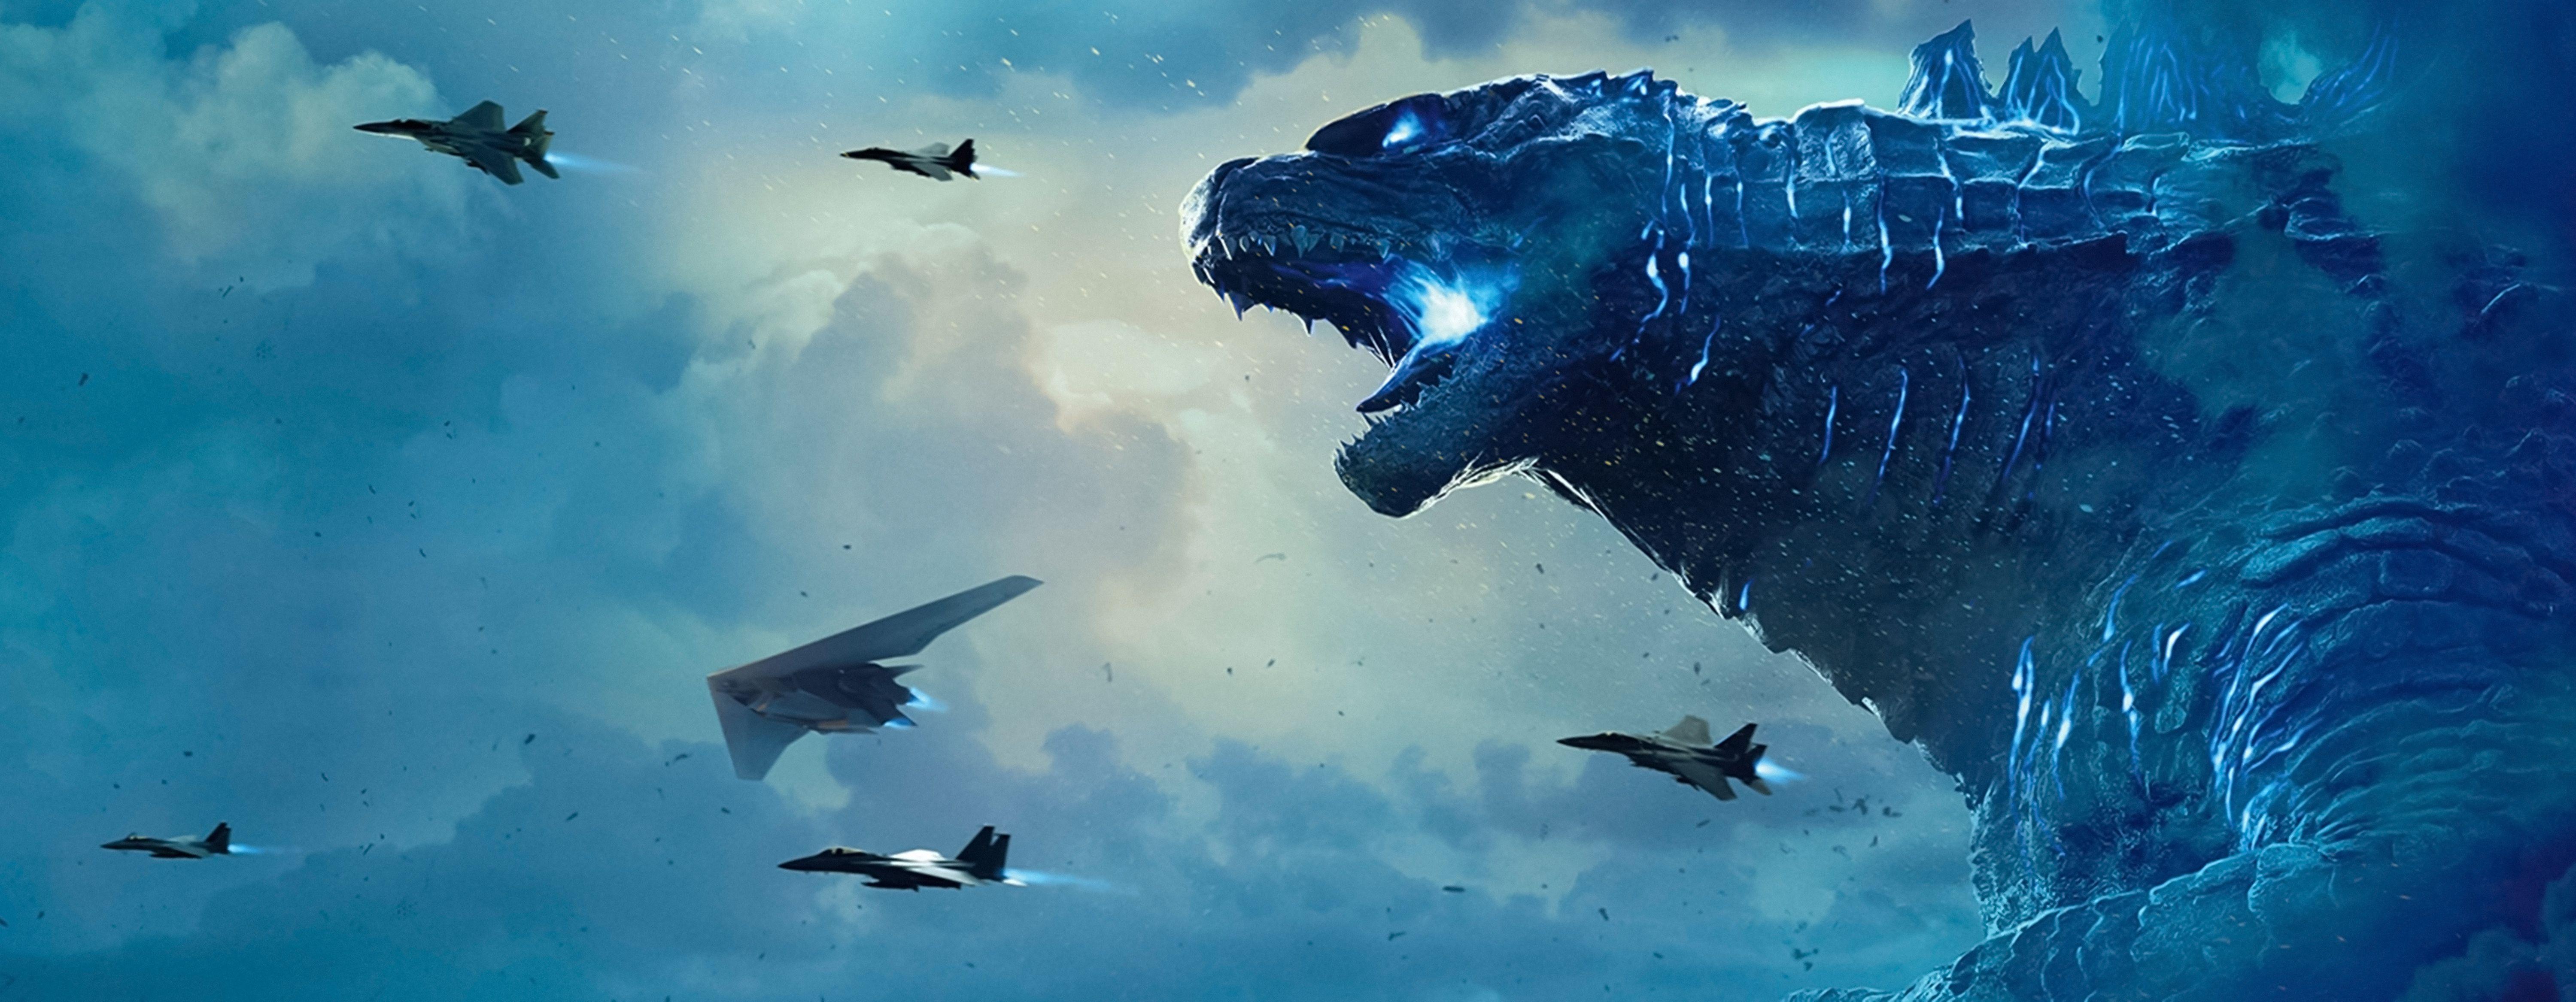 Loạt chi tiết thú vị ẩn giấu trong bom tấn quái vật Chúa tể Godzilla   Phim chiếu rạp